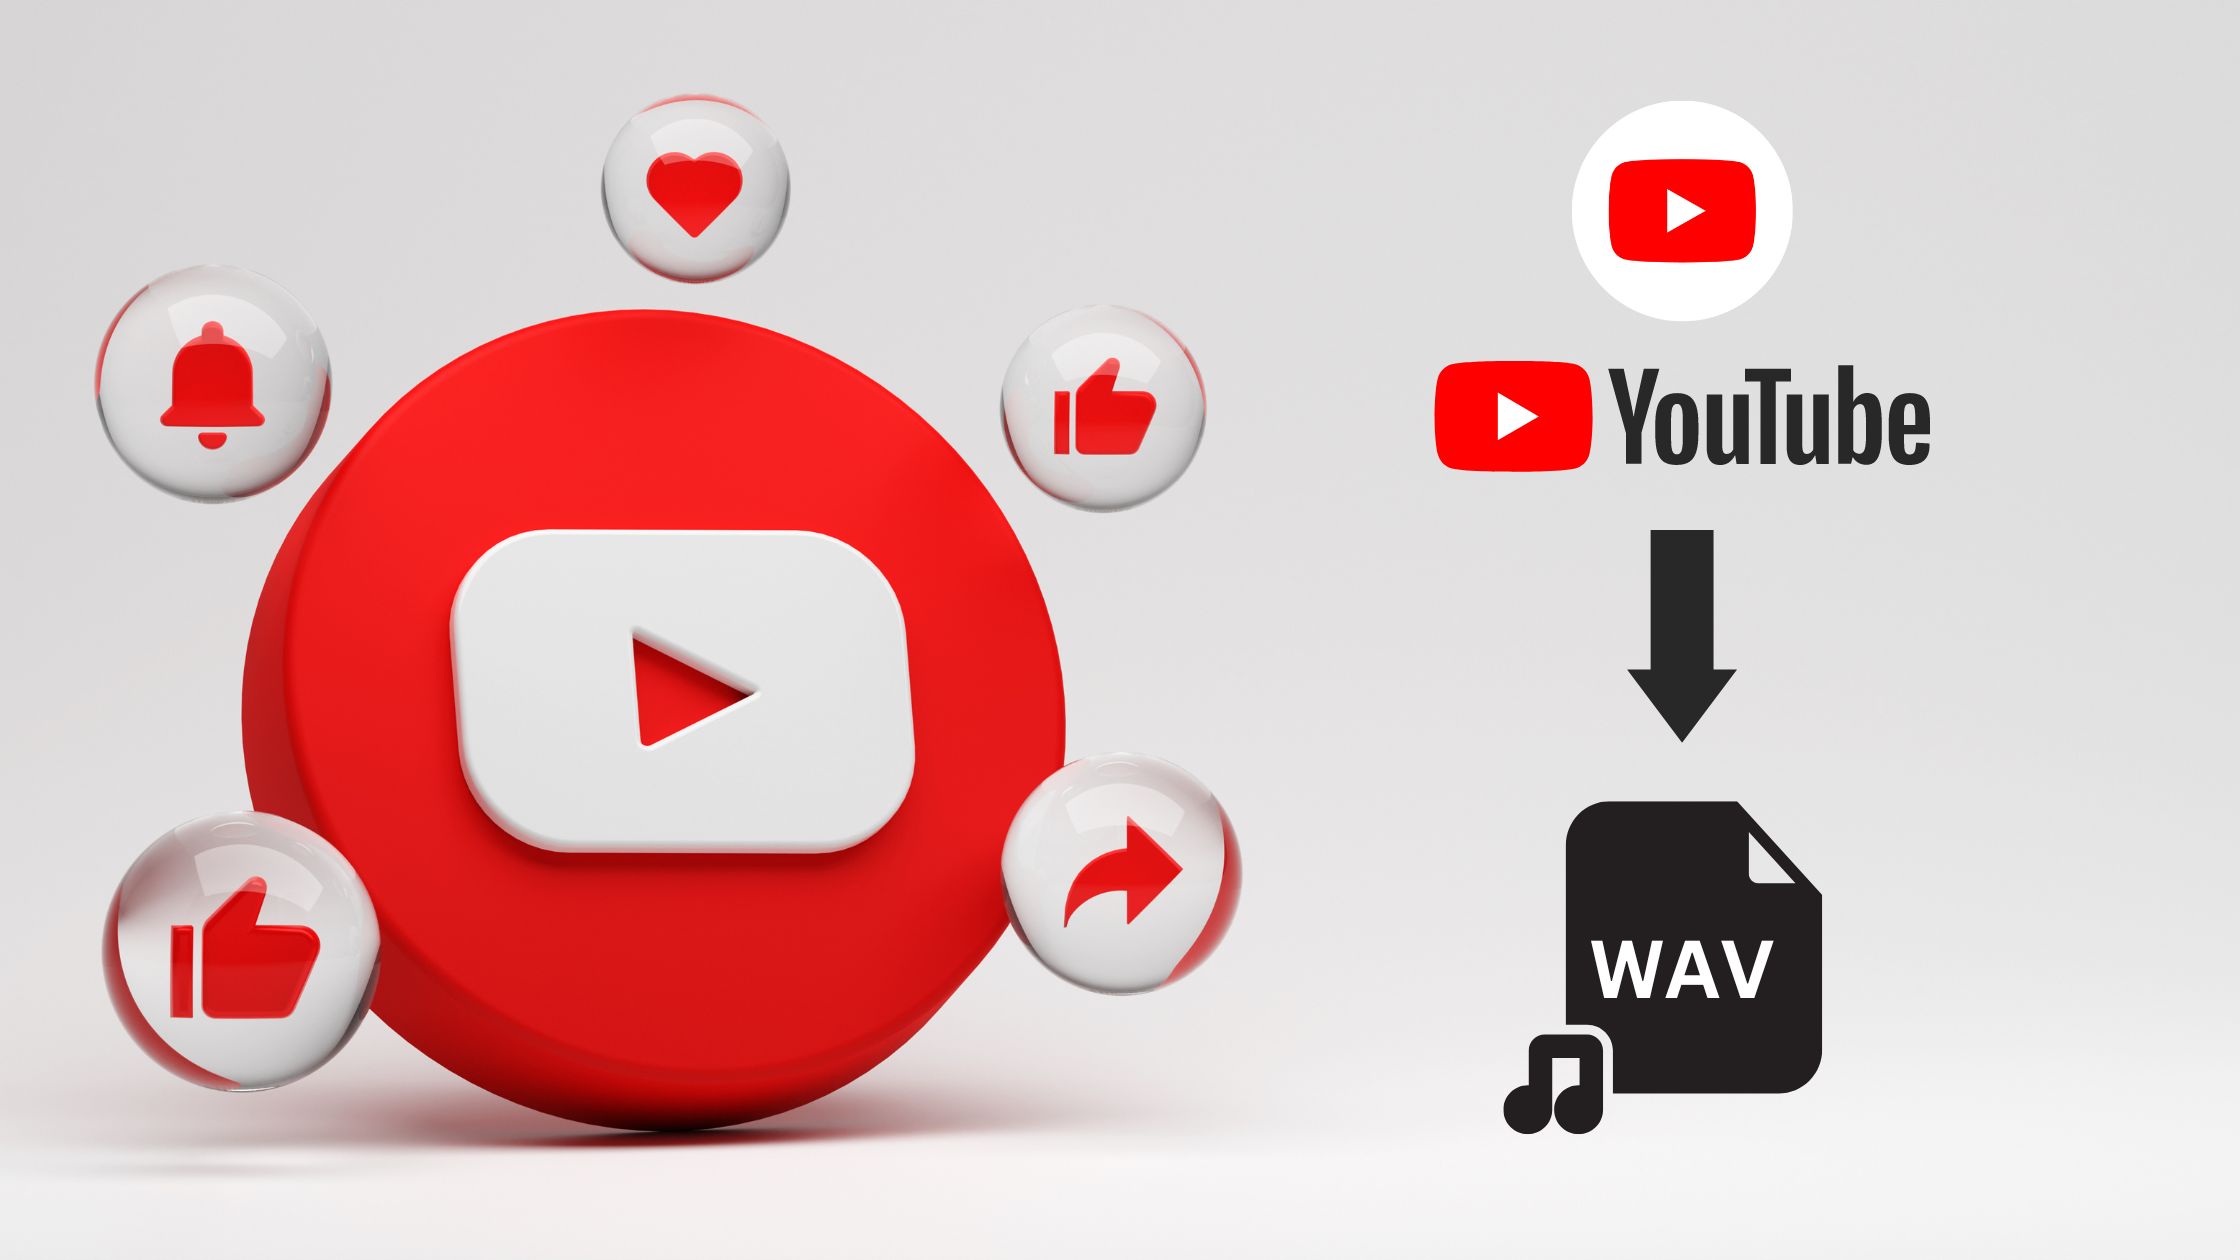 YouTube to WAV Converter